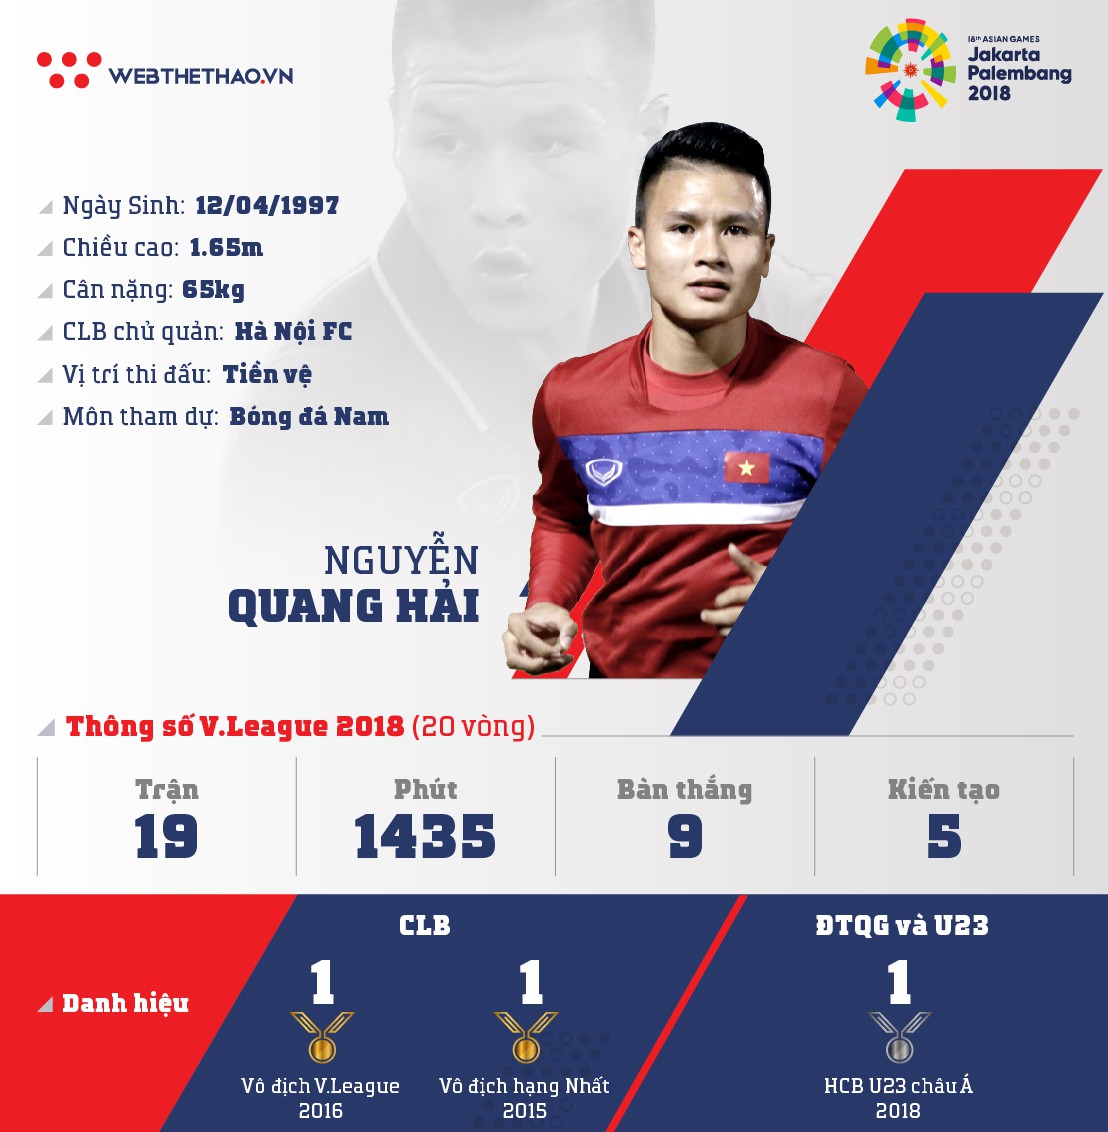 Thông tin tiền vệ Nguyễn Quang Hải cùng U23 Việt Nam chuẩn bị ASIAD 2018 - Ảnh 1.